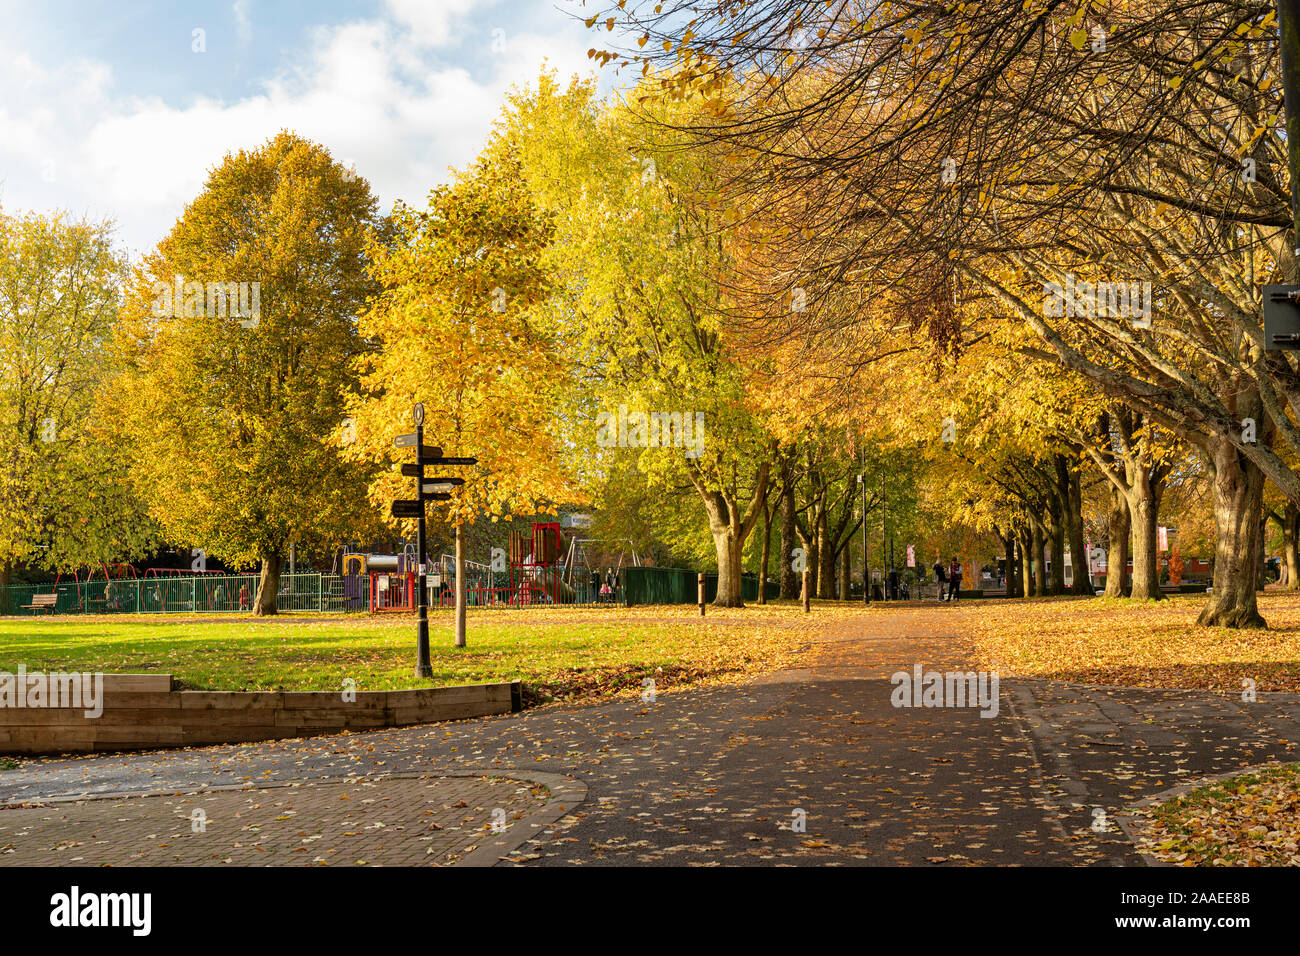 Les couleurs d'automne dorées dans les arbres du parc de la ville de Trowbridge, Wiltshire, Angleterre, Royaume-Uni Banque D'Images